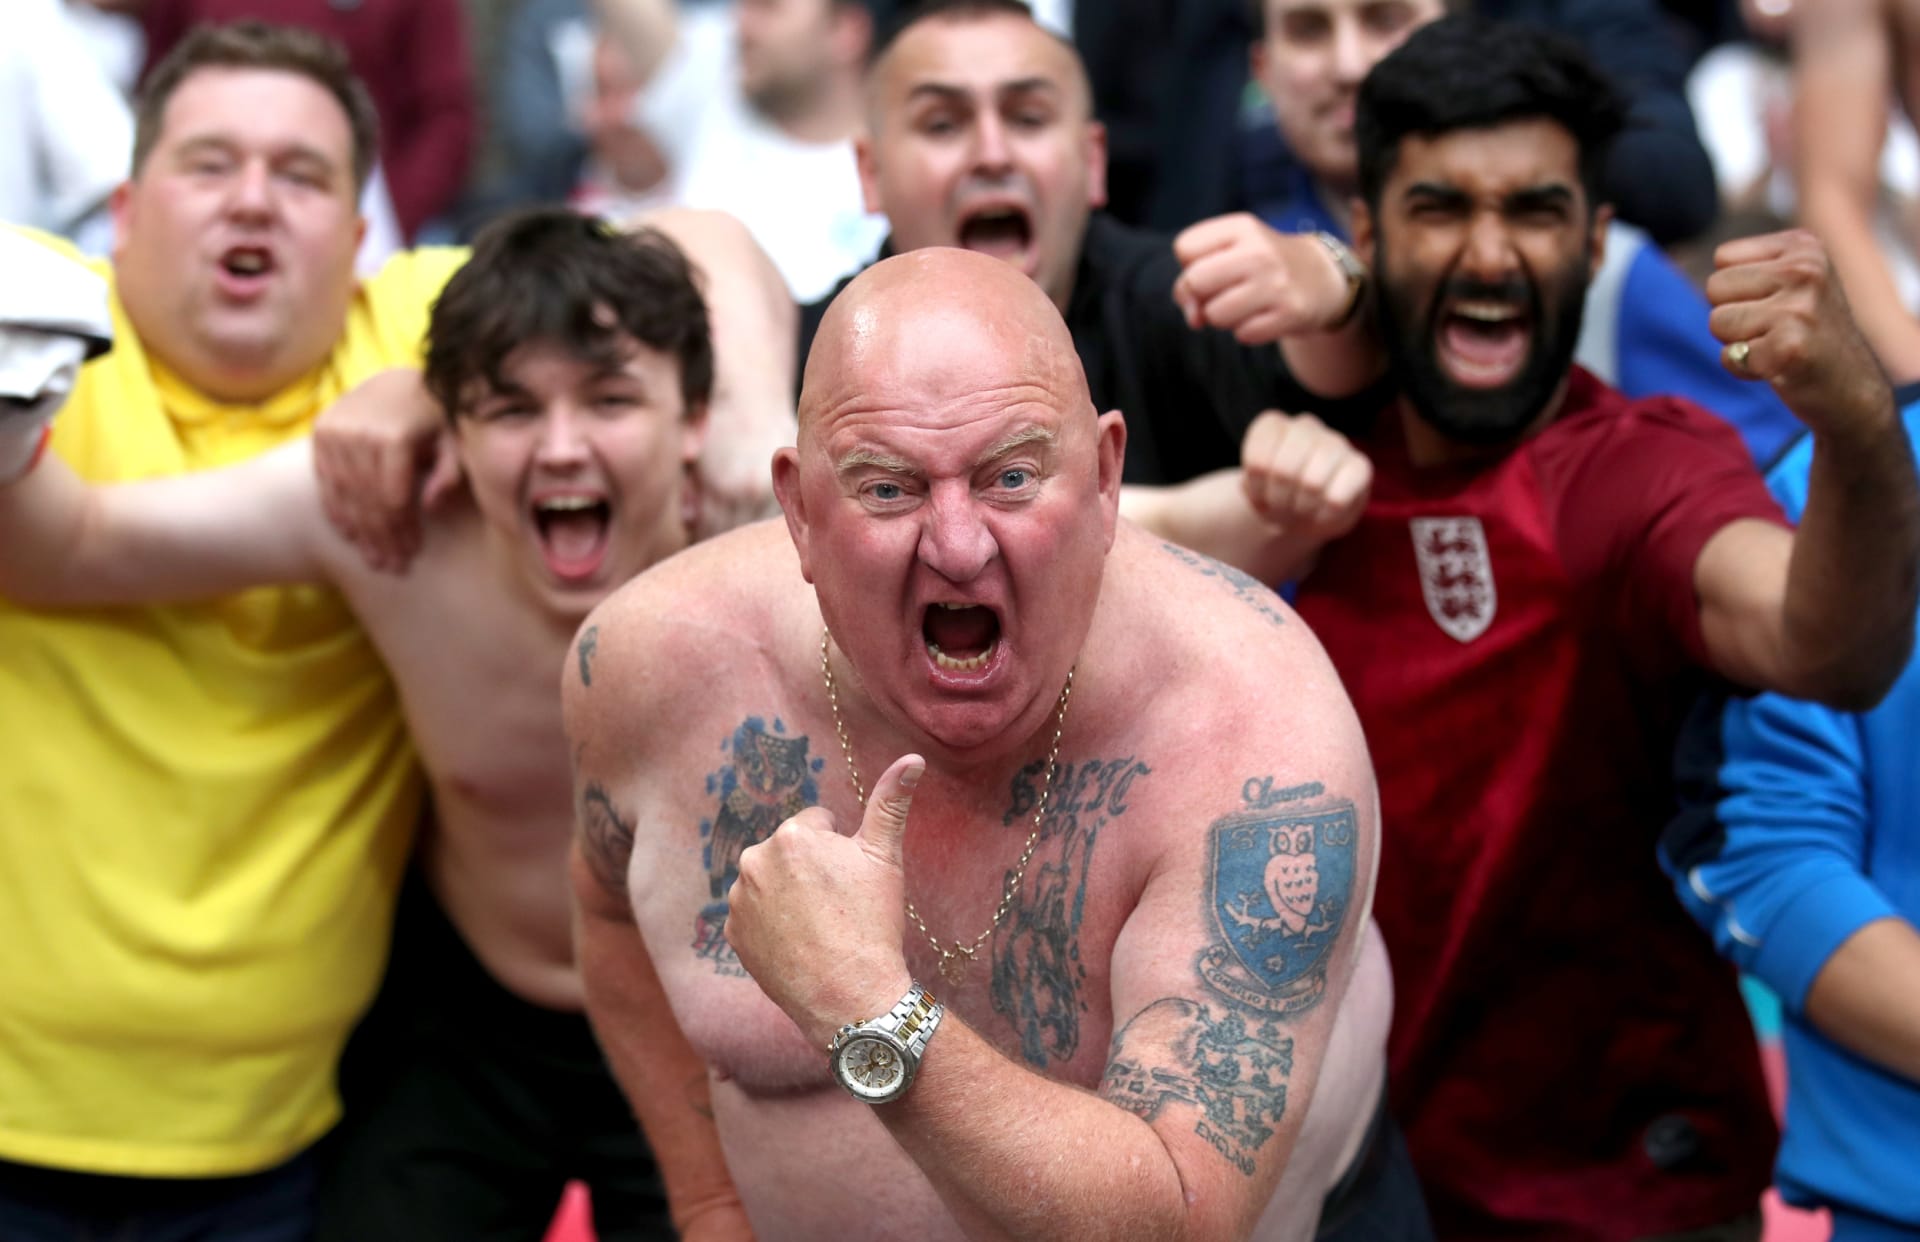 Angličtí fanoušci slaví vítězství nad Německem